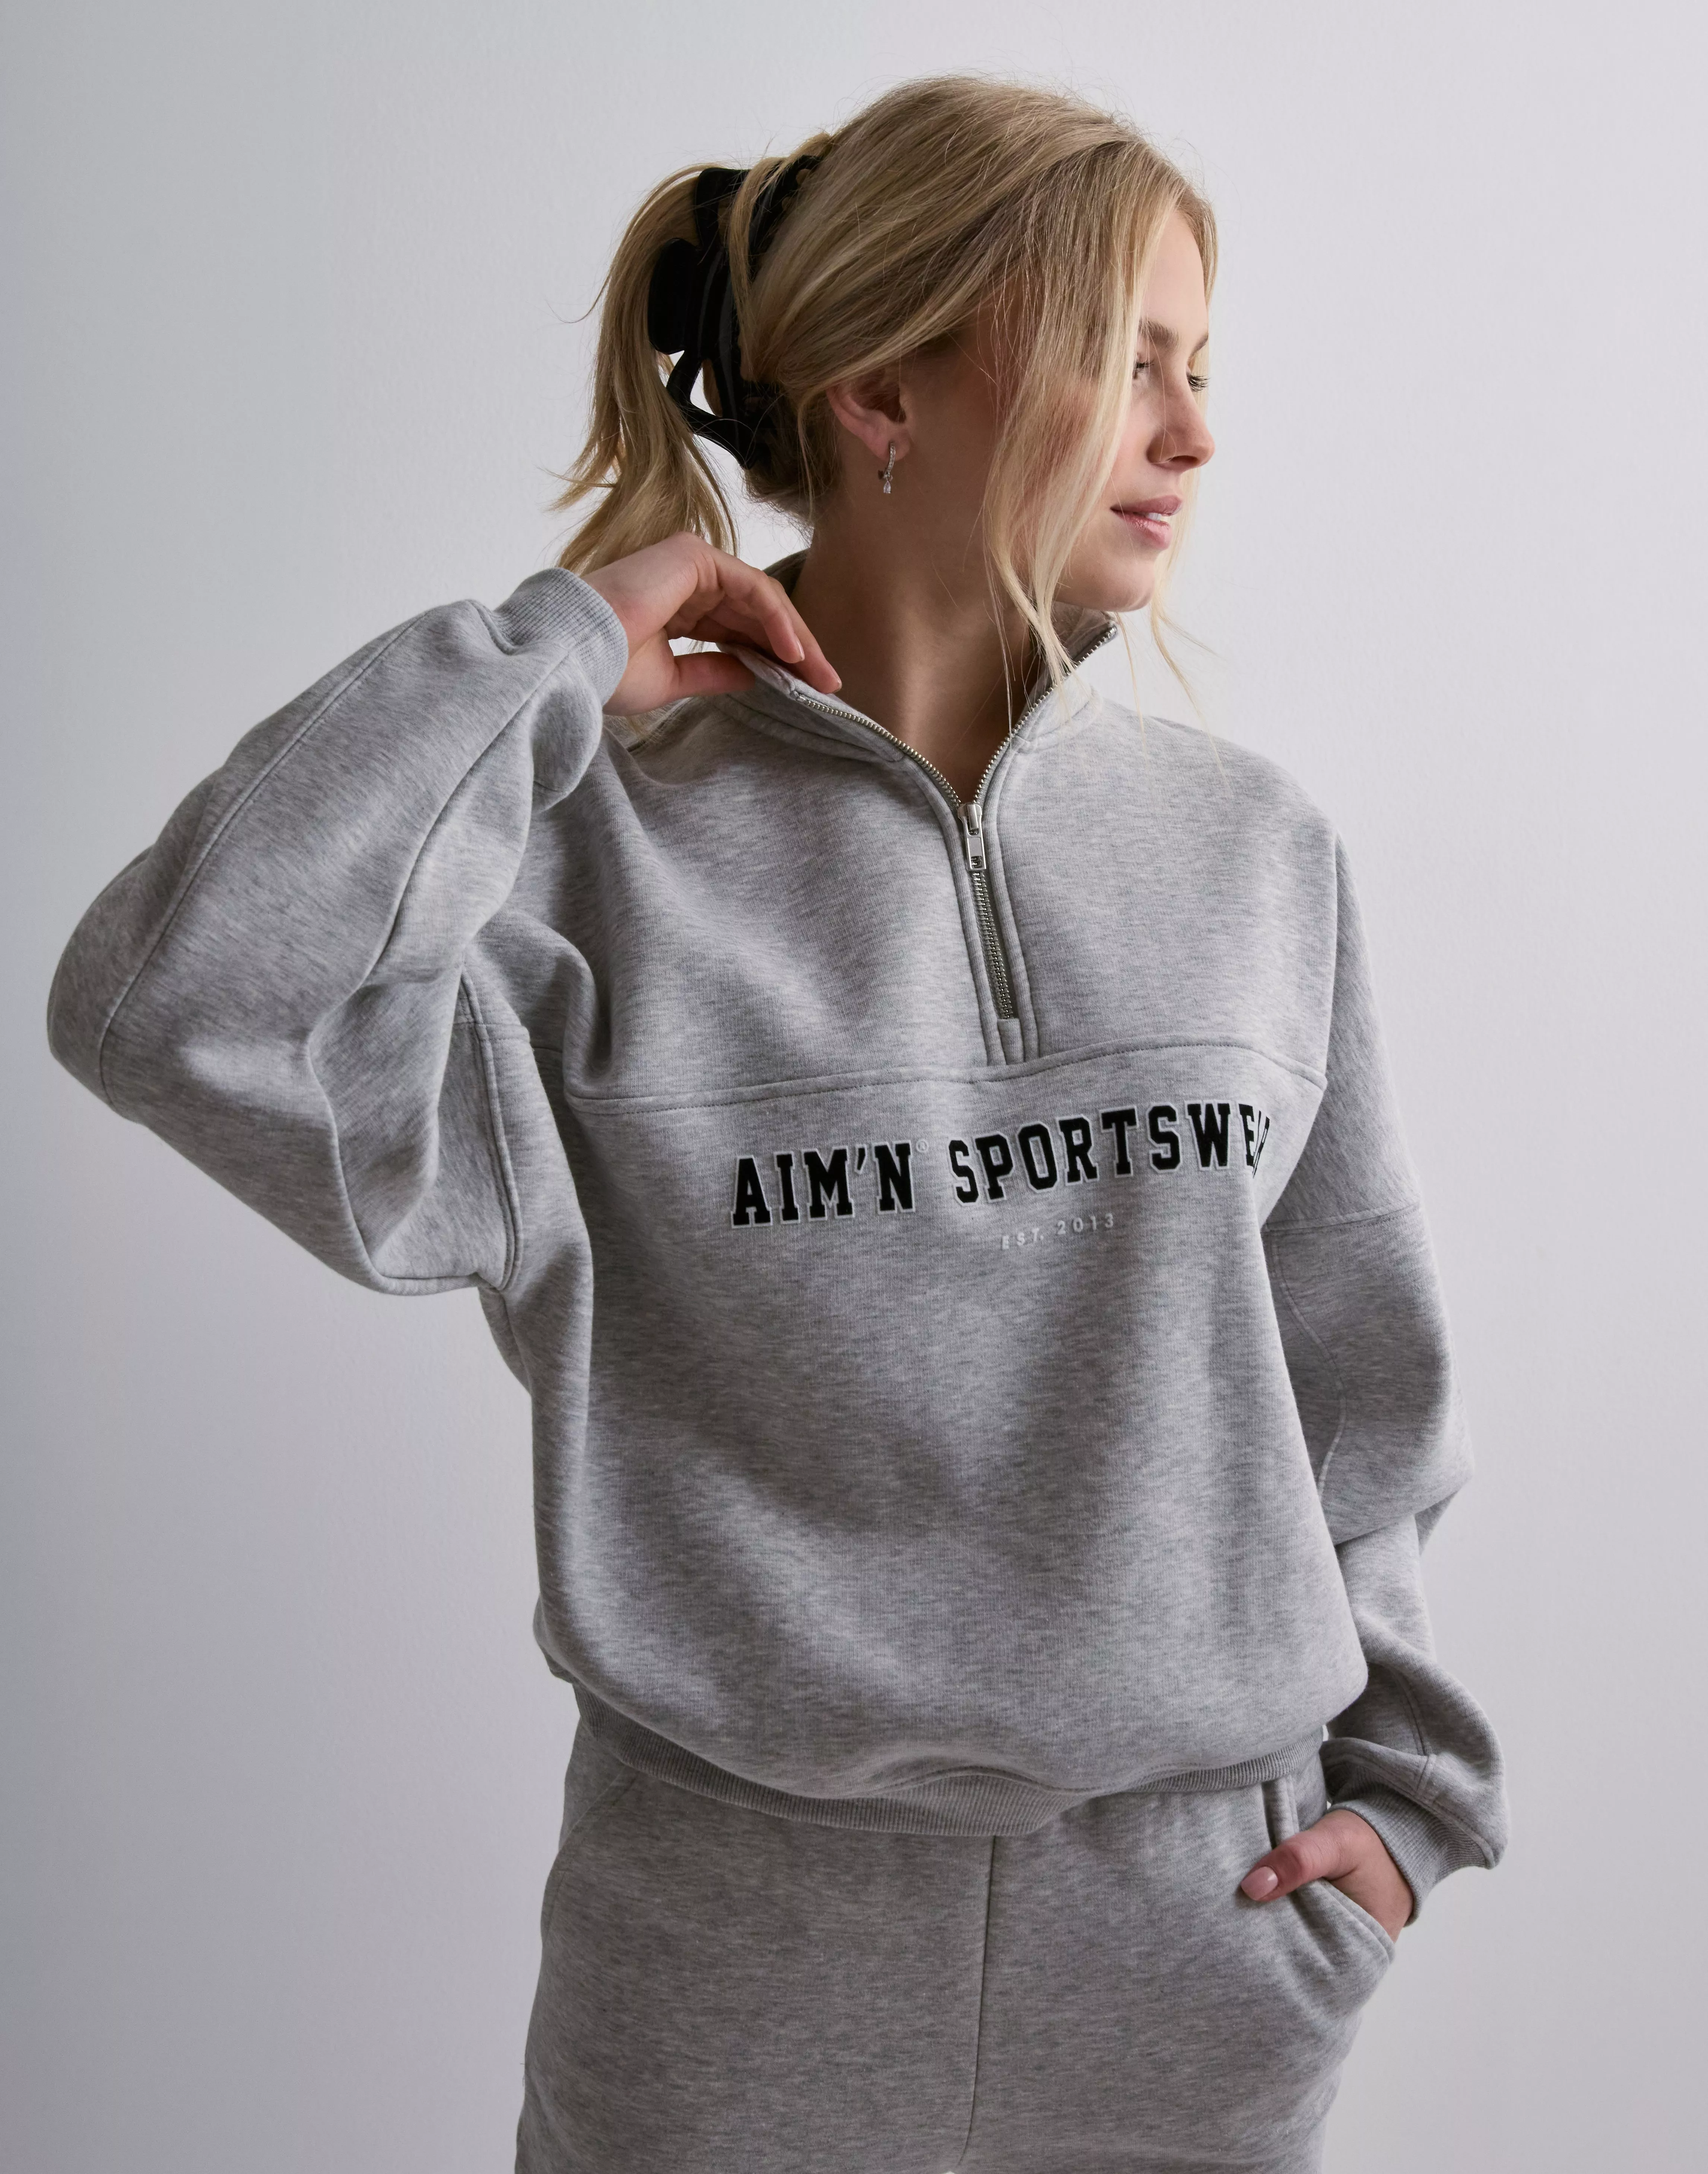 Buy Aim'n Sweats & Hoodies, Clothing Online